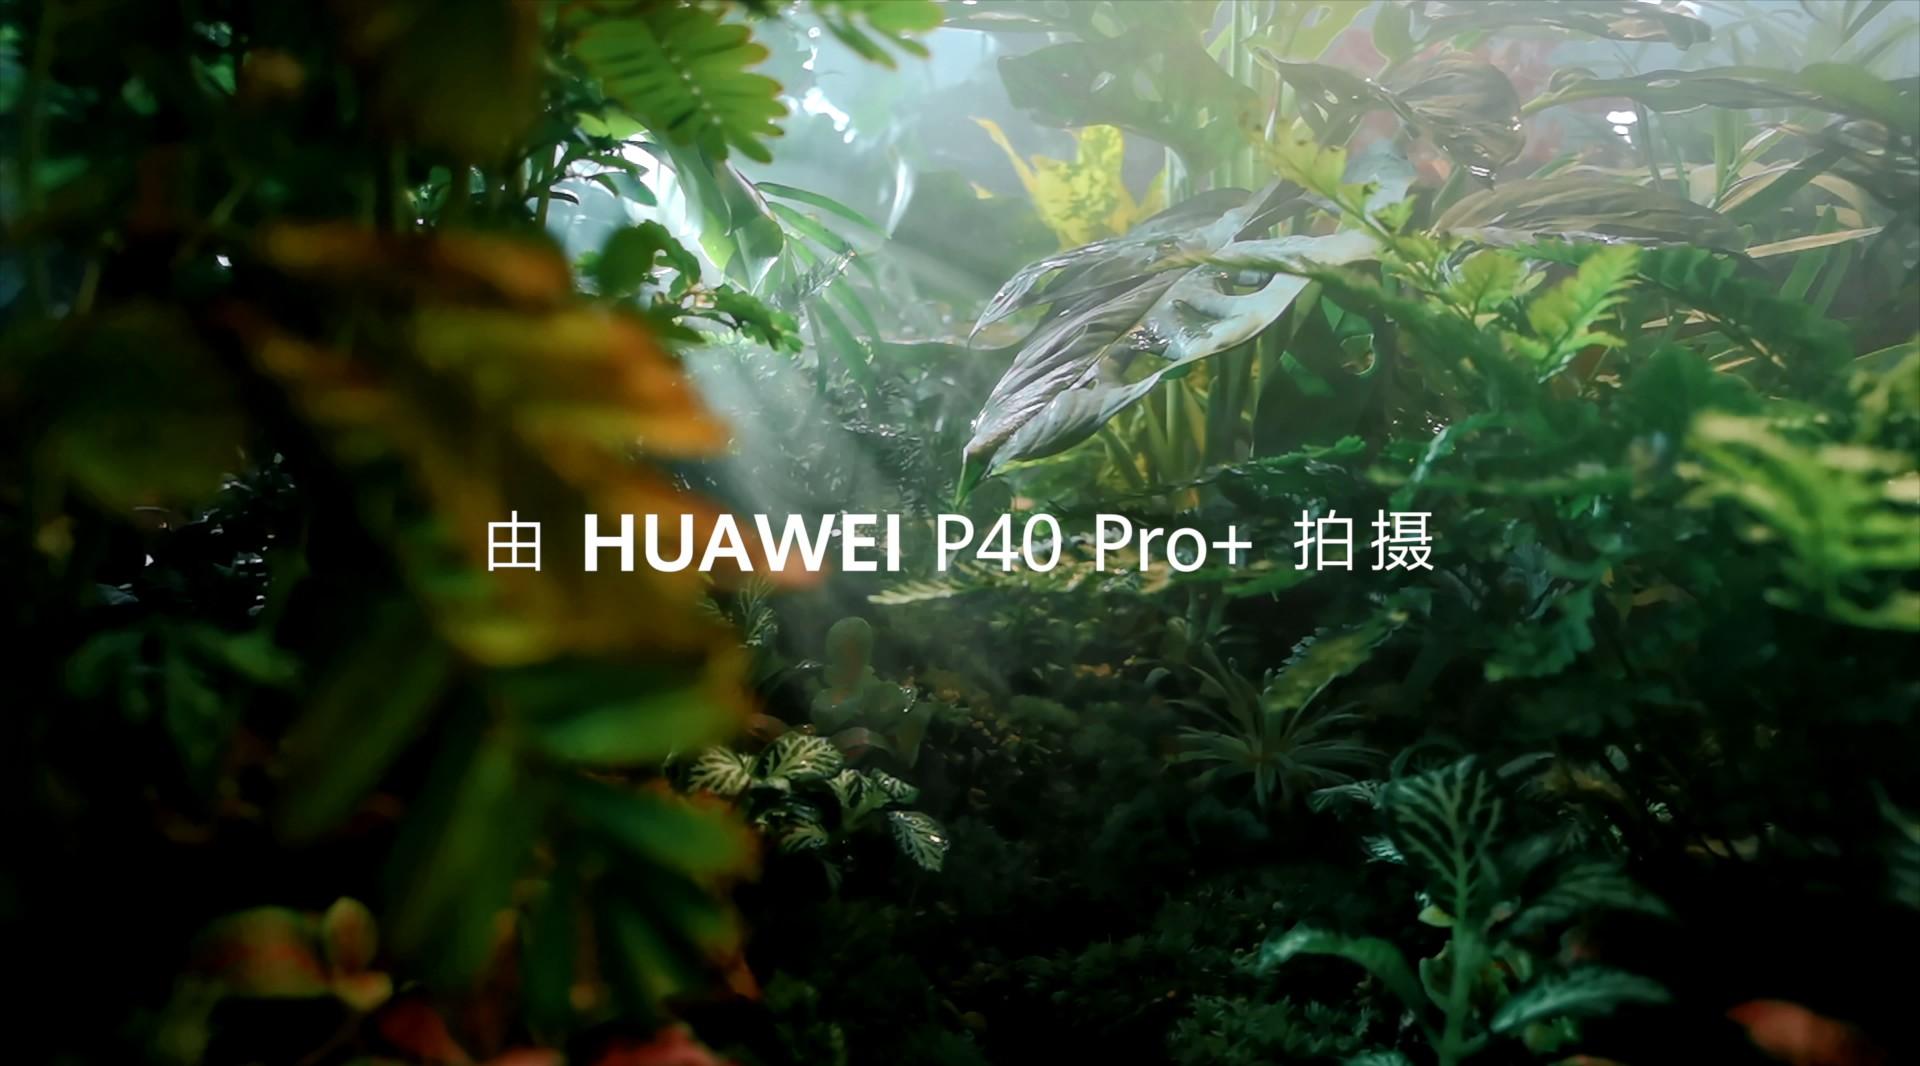 HUAWEI P40 Pro+随手拍大片 阳台上的丛林探险